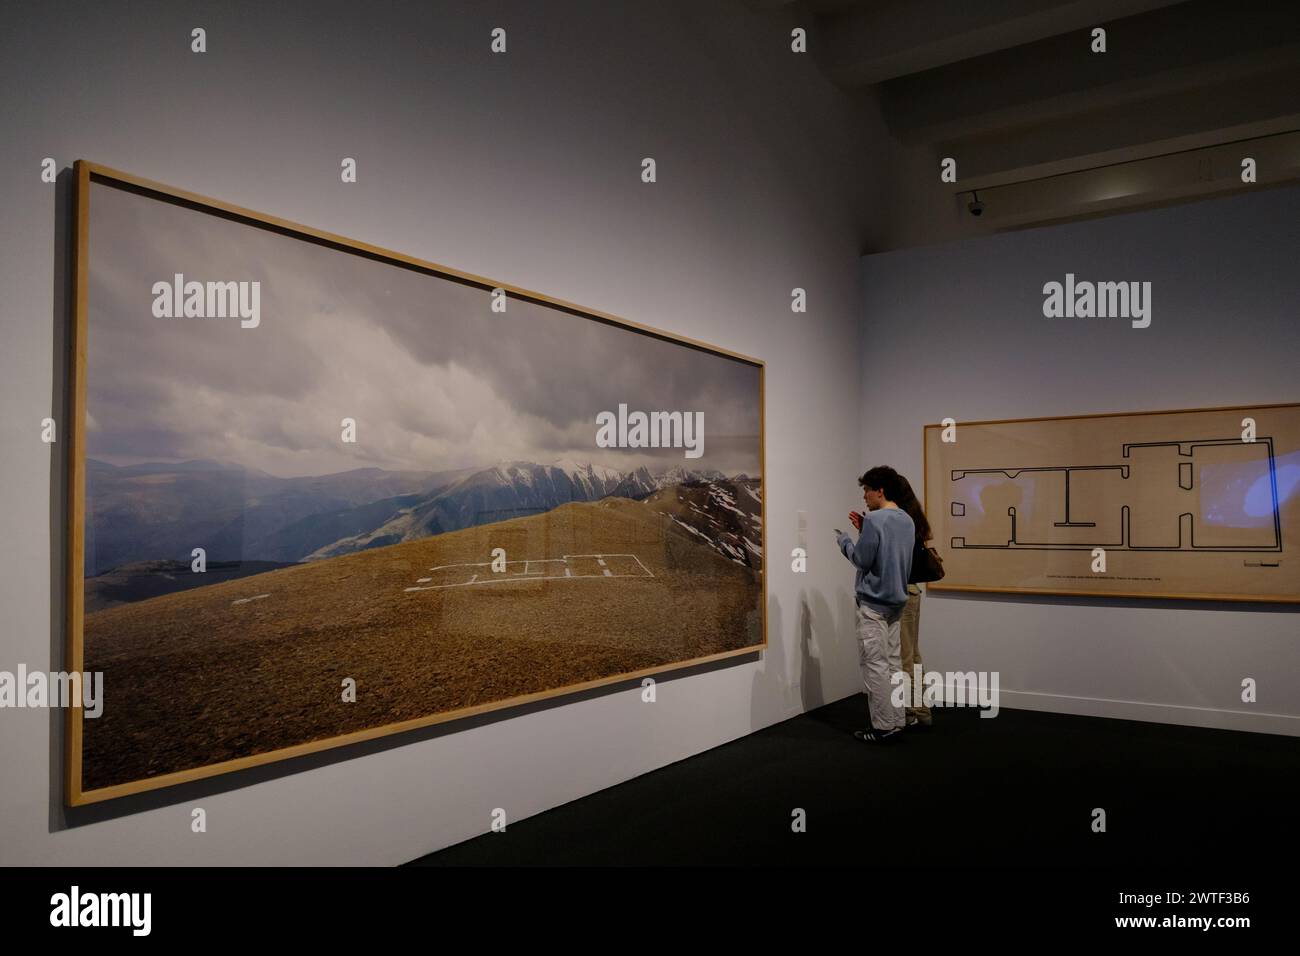 Mostra il titolo, “Horizon and Limit” al CaixaForum di Madrid, Spagna Foto Stock